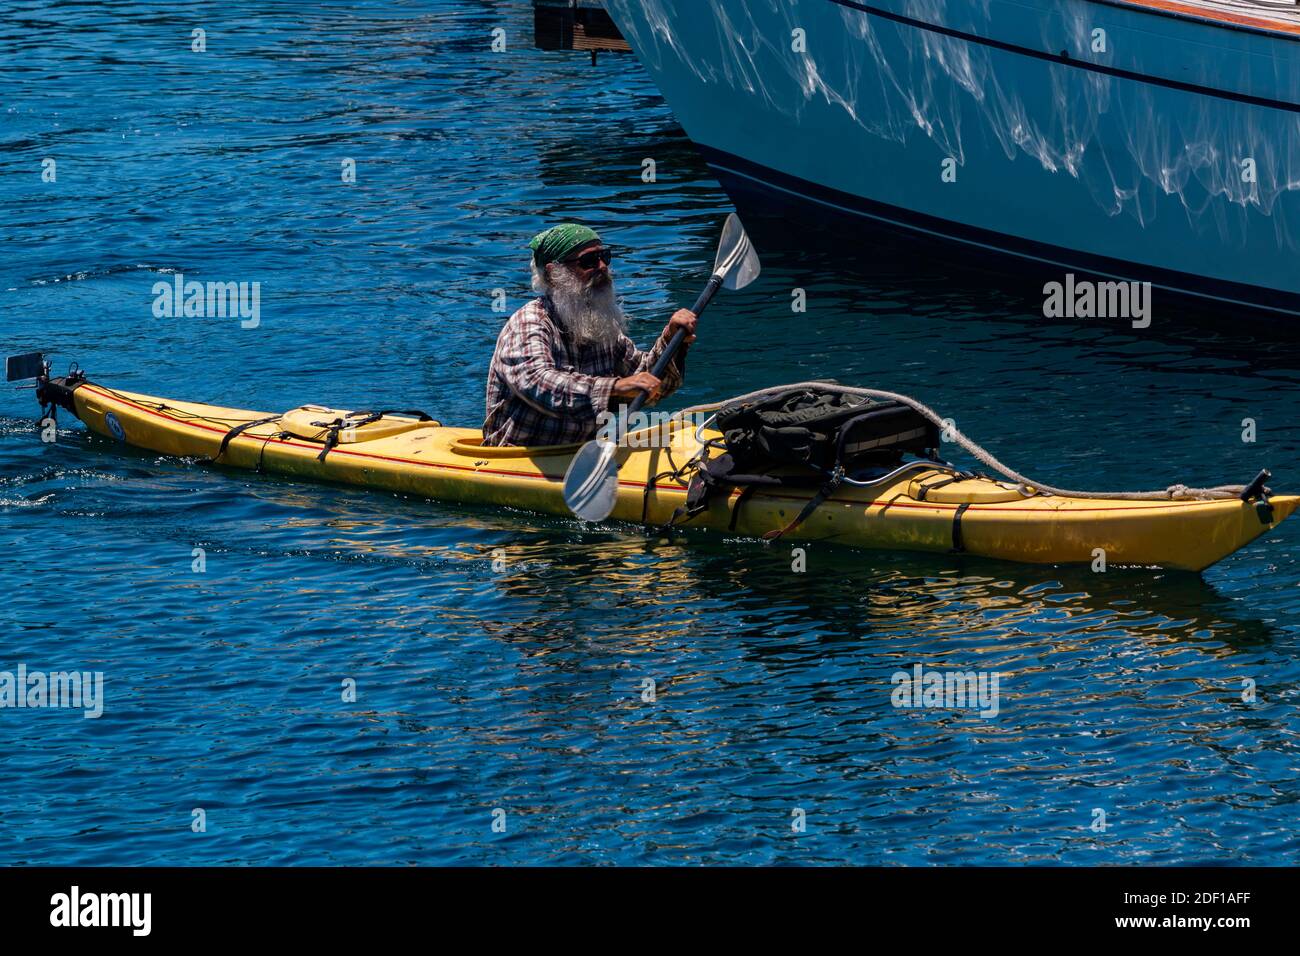 Un kayakiste barbu pagaille son chemin parmi les voiliers de Port de plaisance de la baie de Monterey Banque D'Images